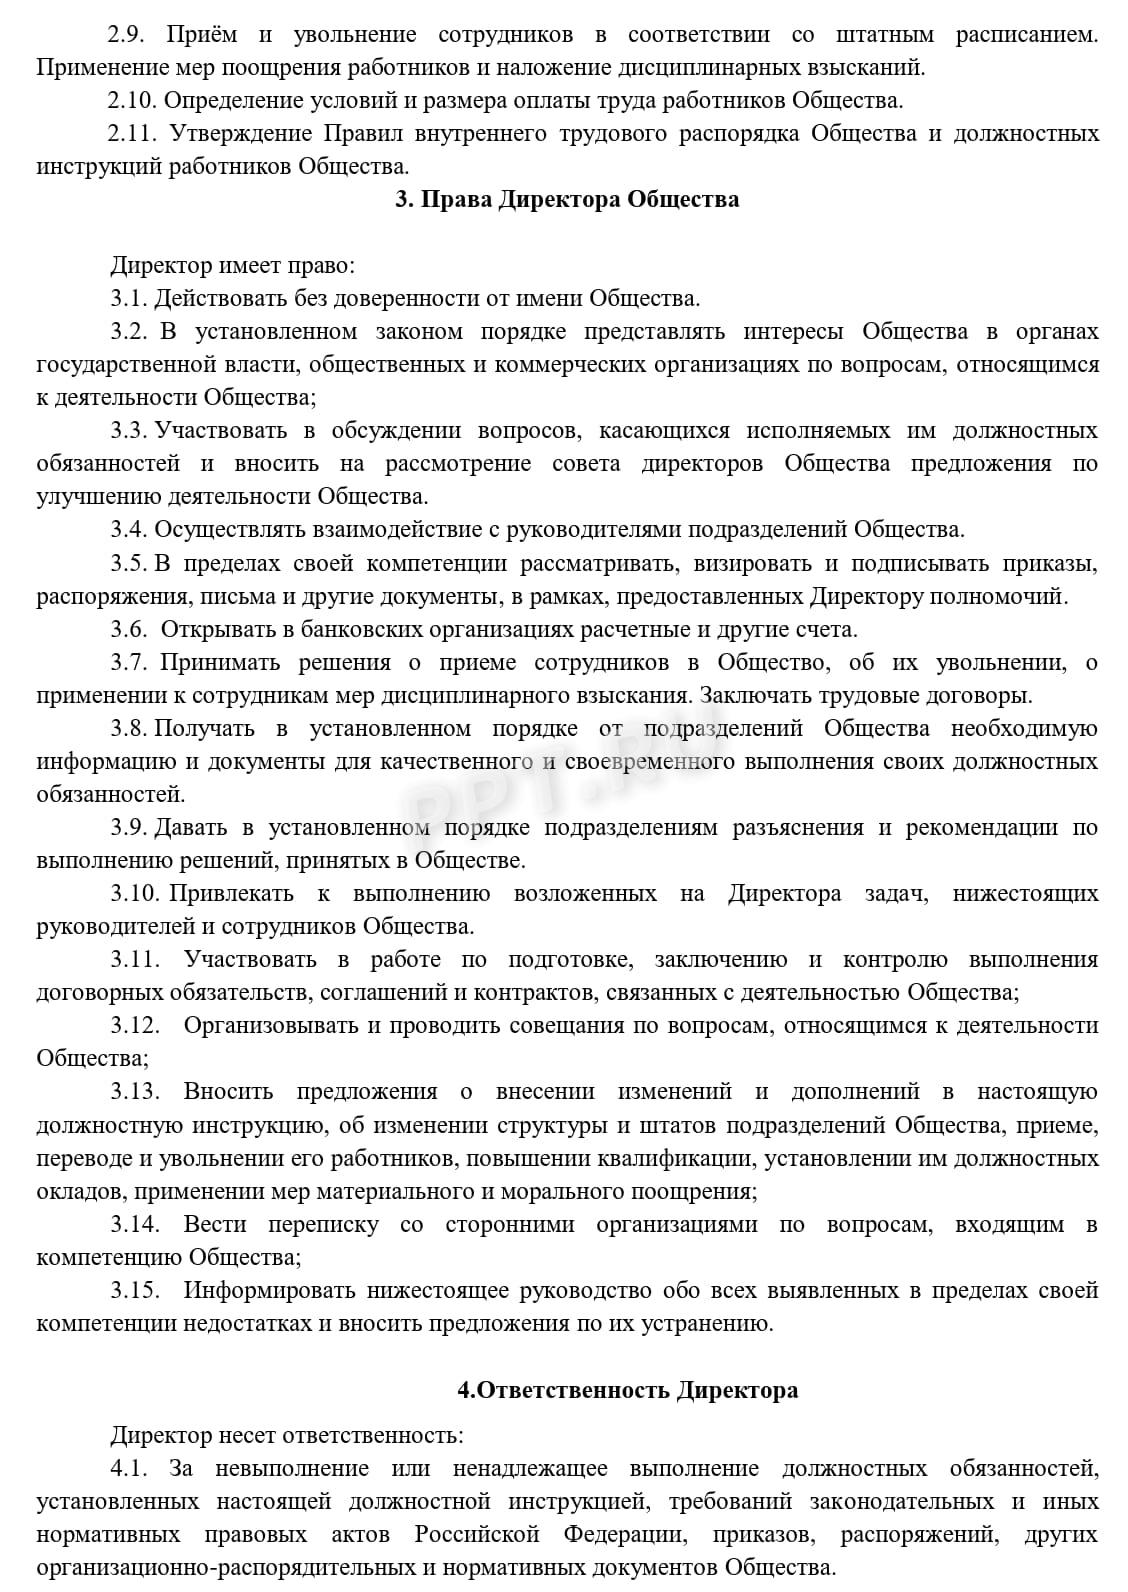 Должностная инструкция директора ООО (стр. 3)